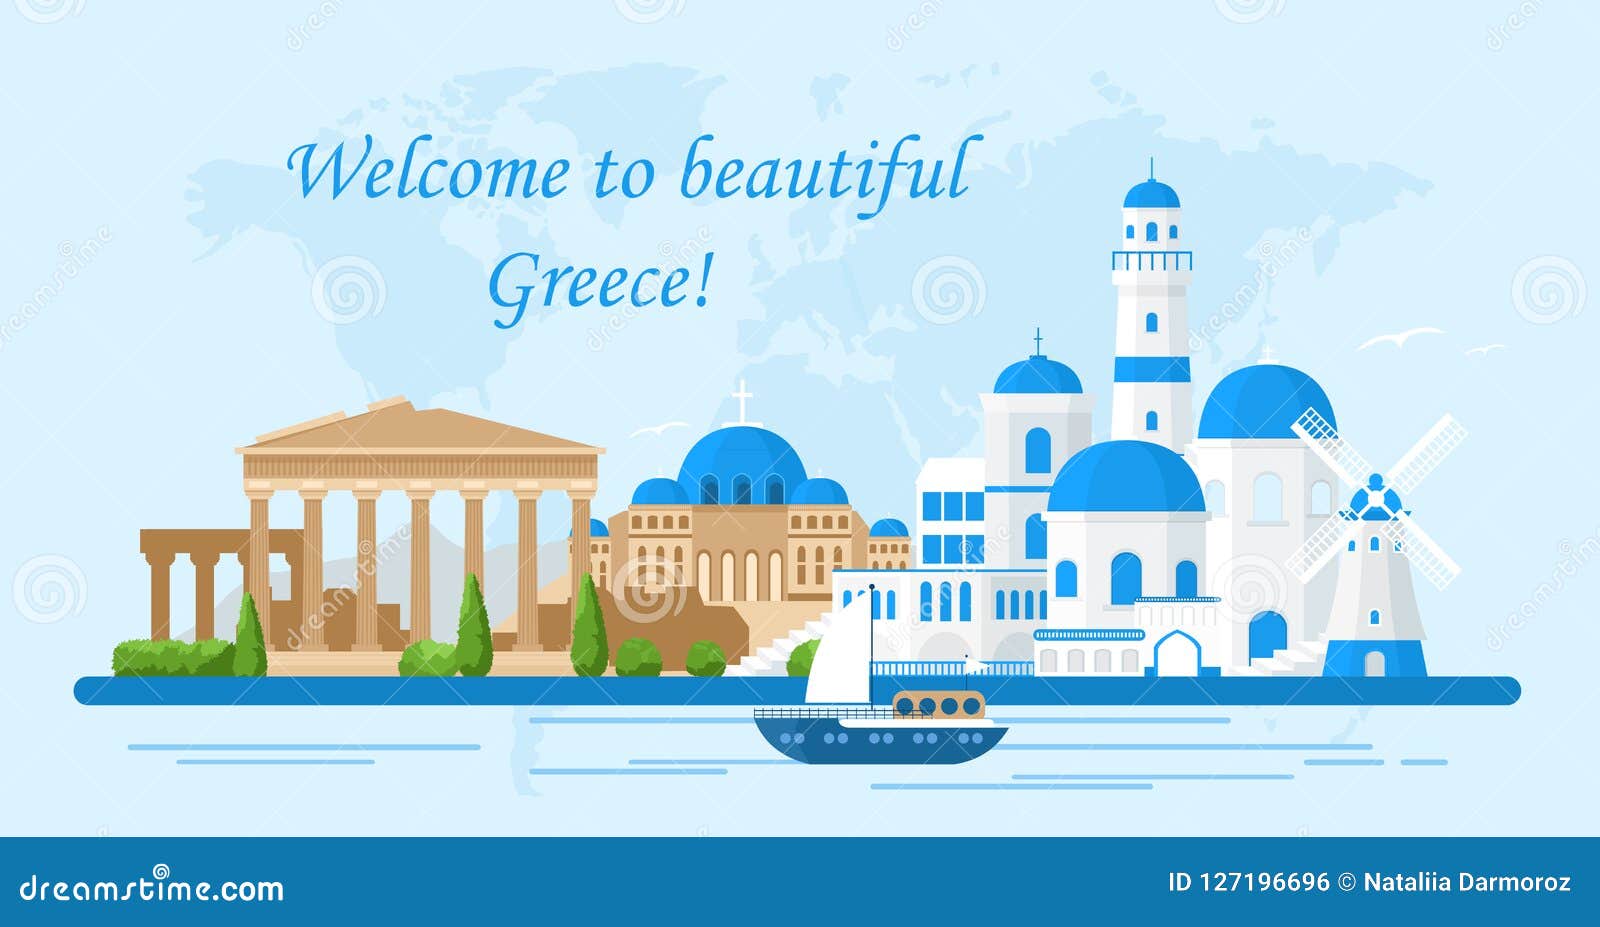 Греция иллюстрации флэт